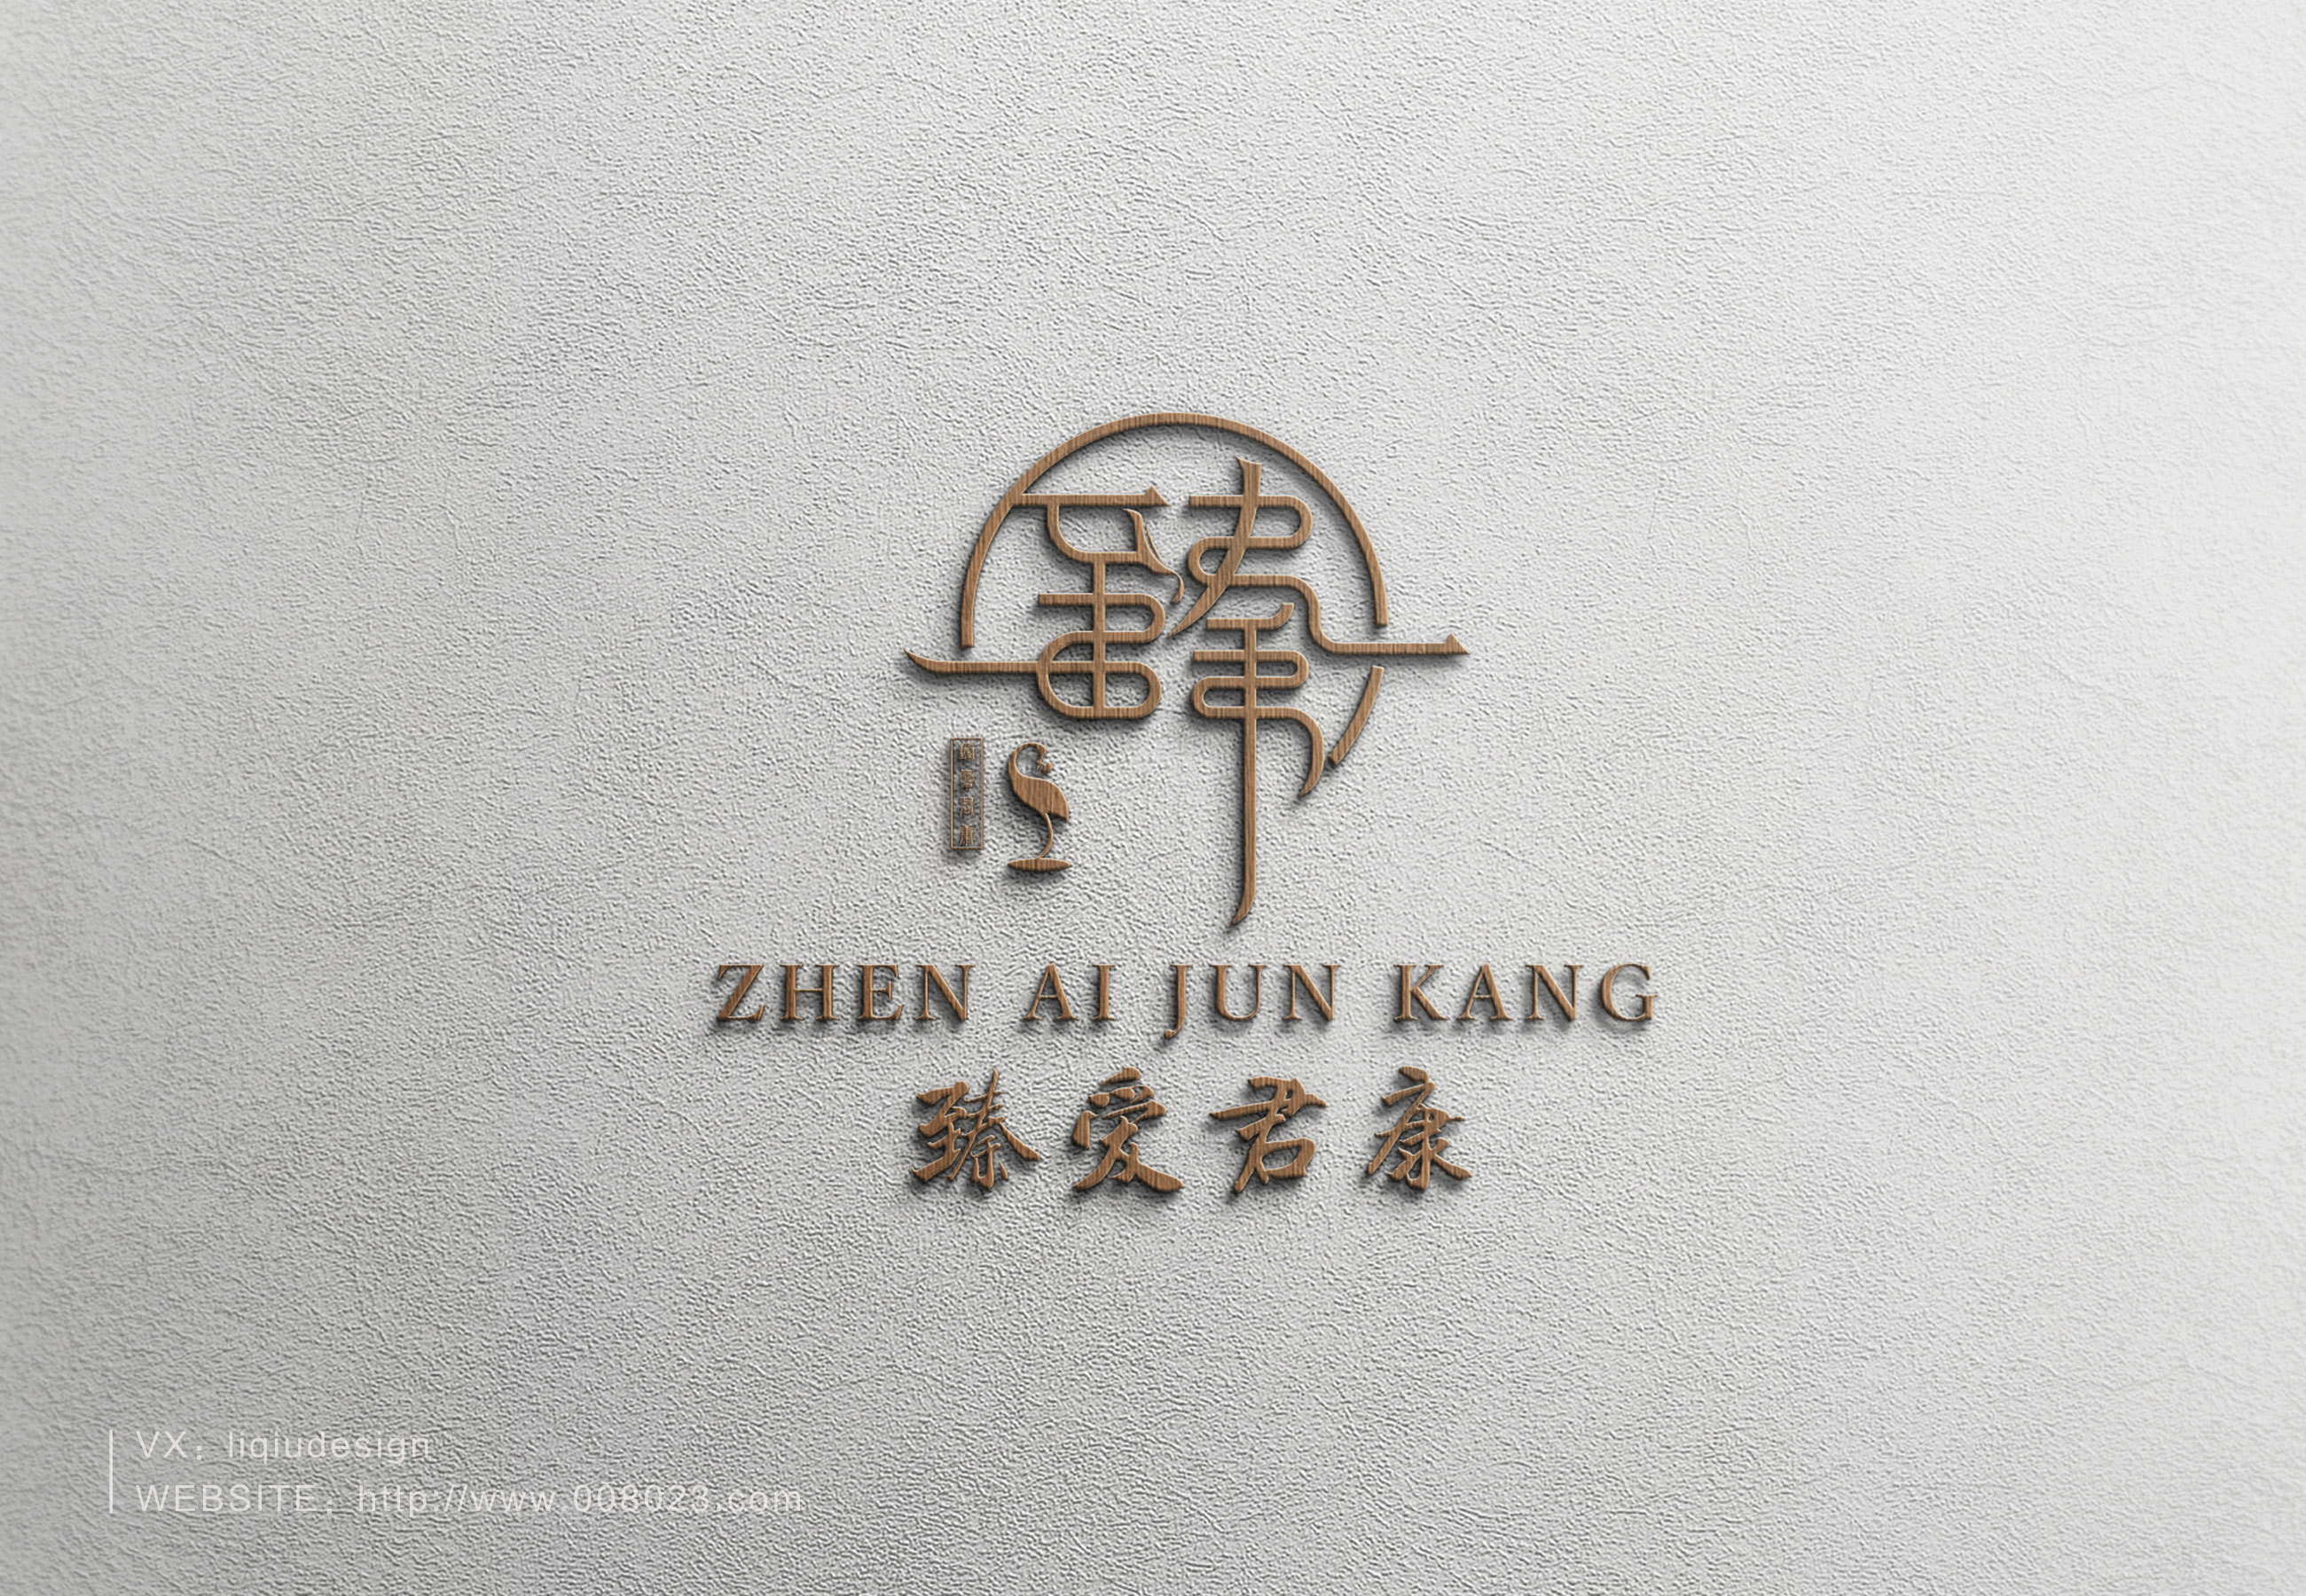 臻爱君康logo设计 中国风logo设计 中式logo设计